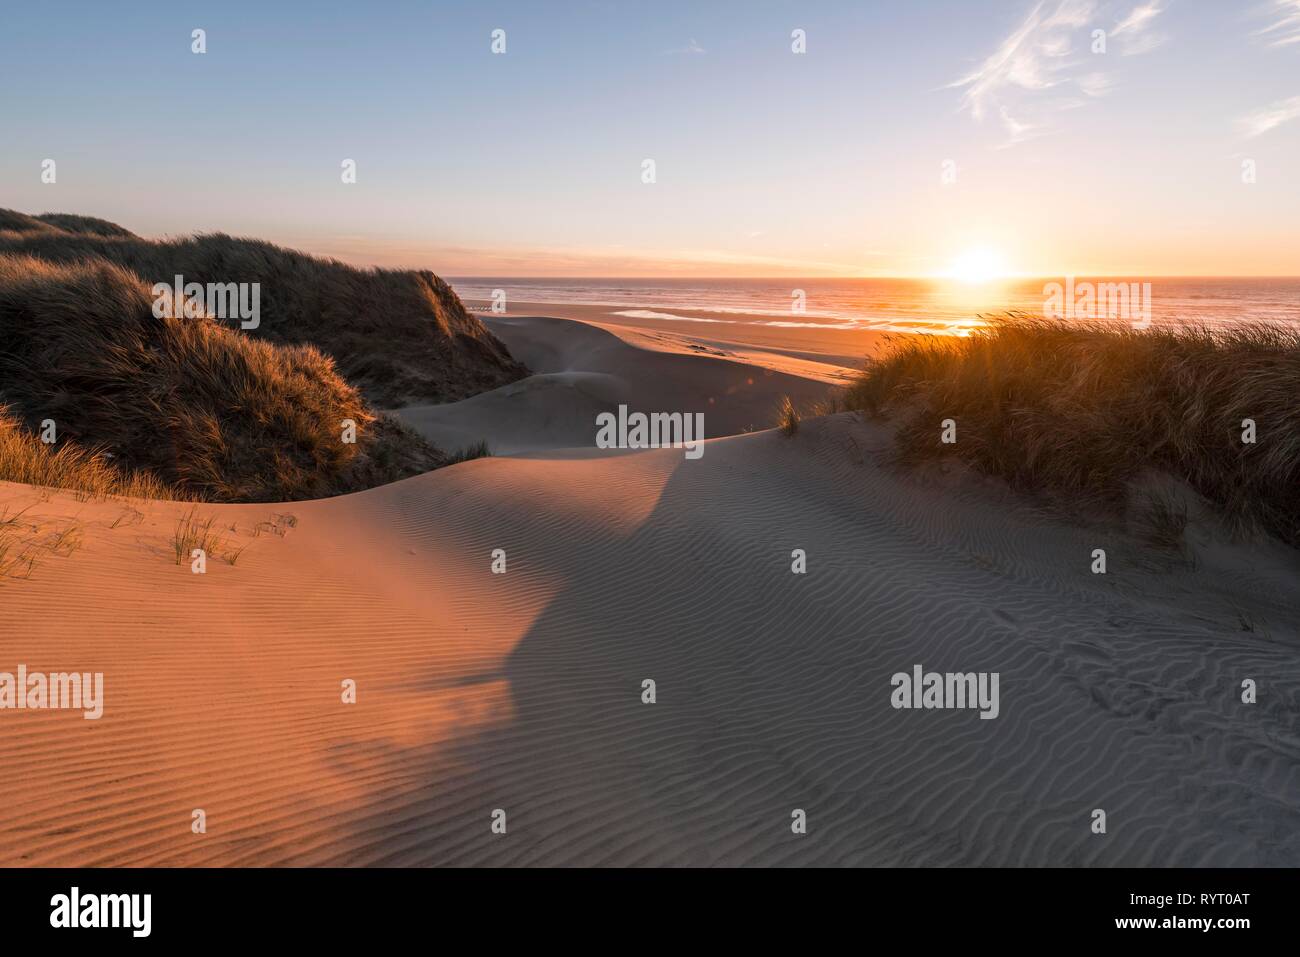 Coucher de soleil, plage de sable avec des dunes de sable de la côte, l'Aulne Dune, Baker Beach, point de vue Holman Vista, California, USA Banque D'Images